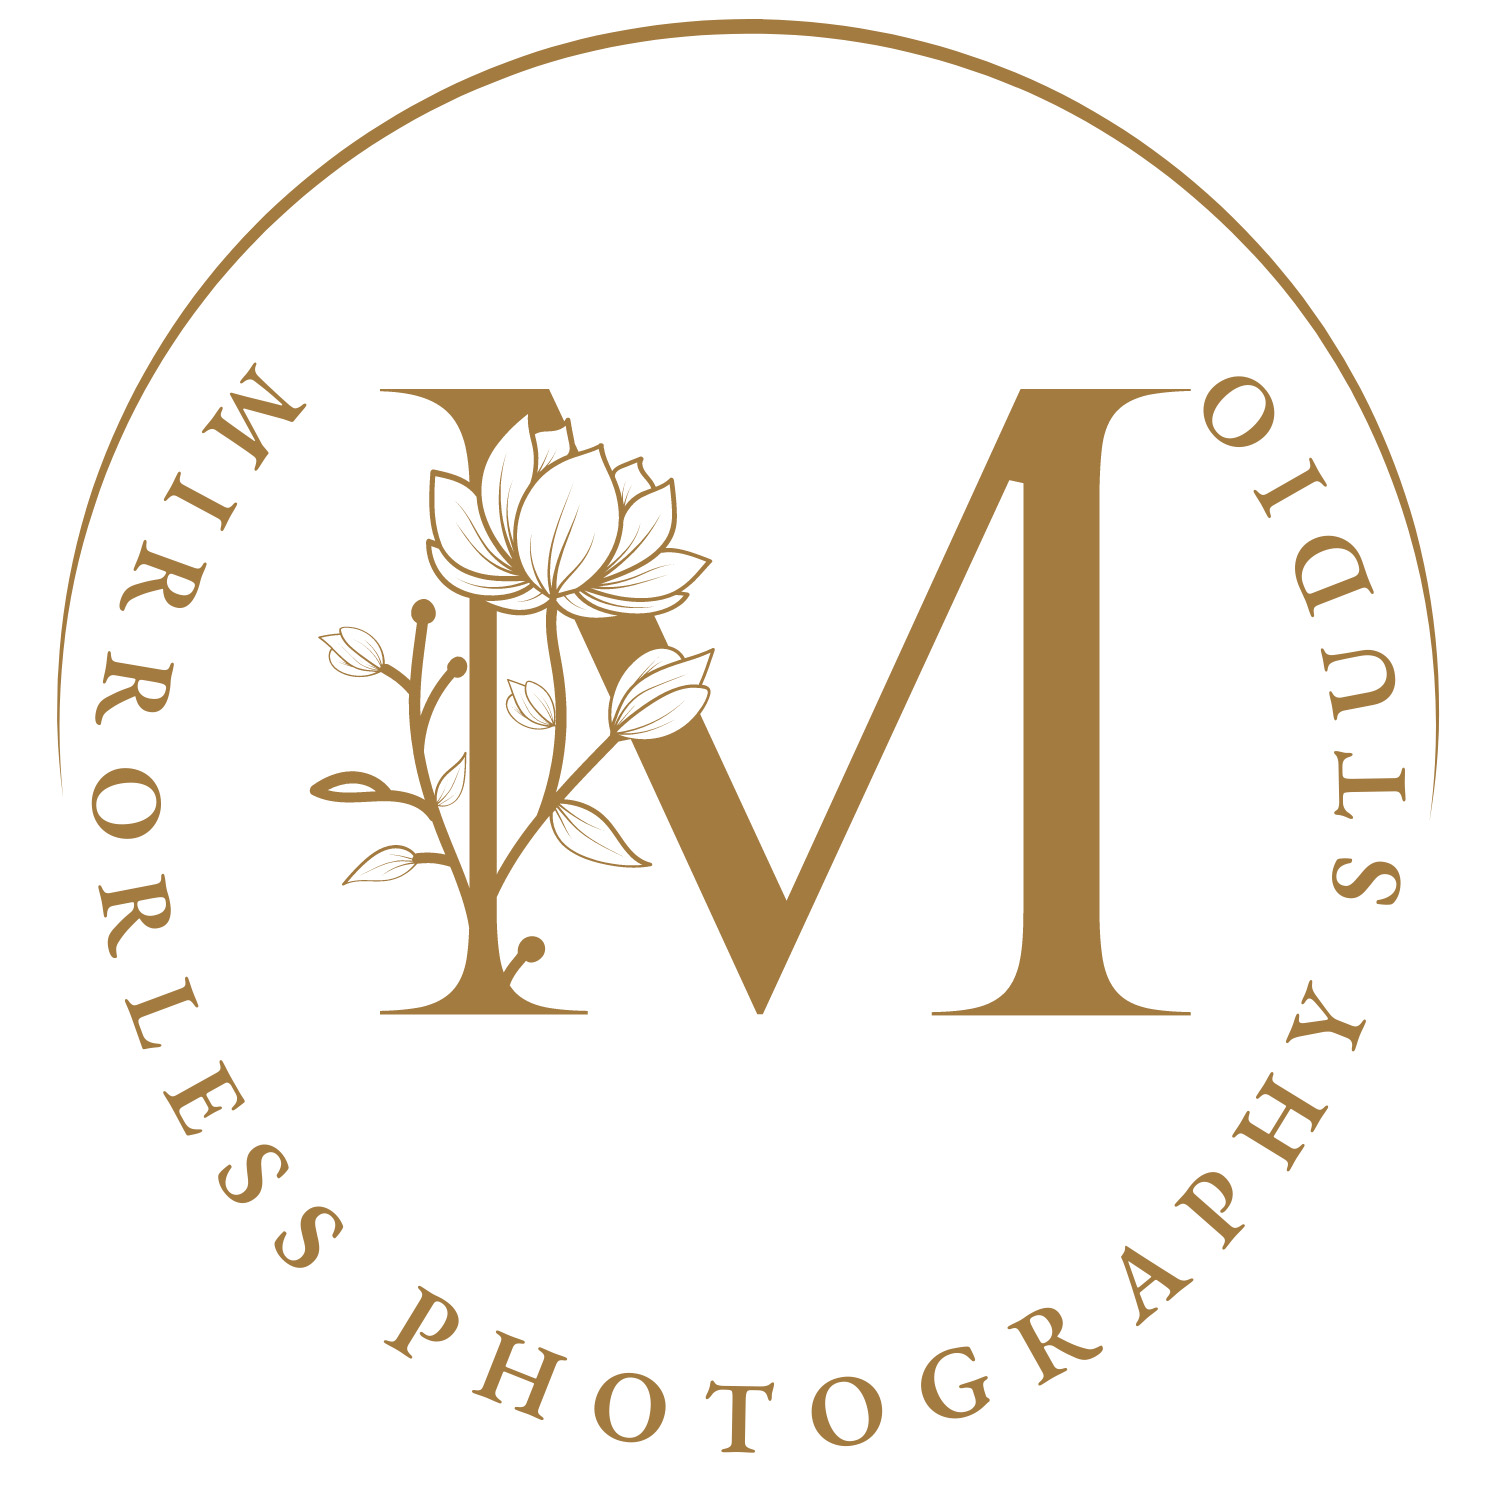 Mirrorless Photo Studio